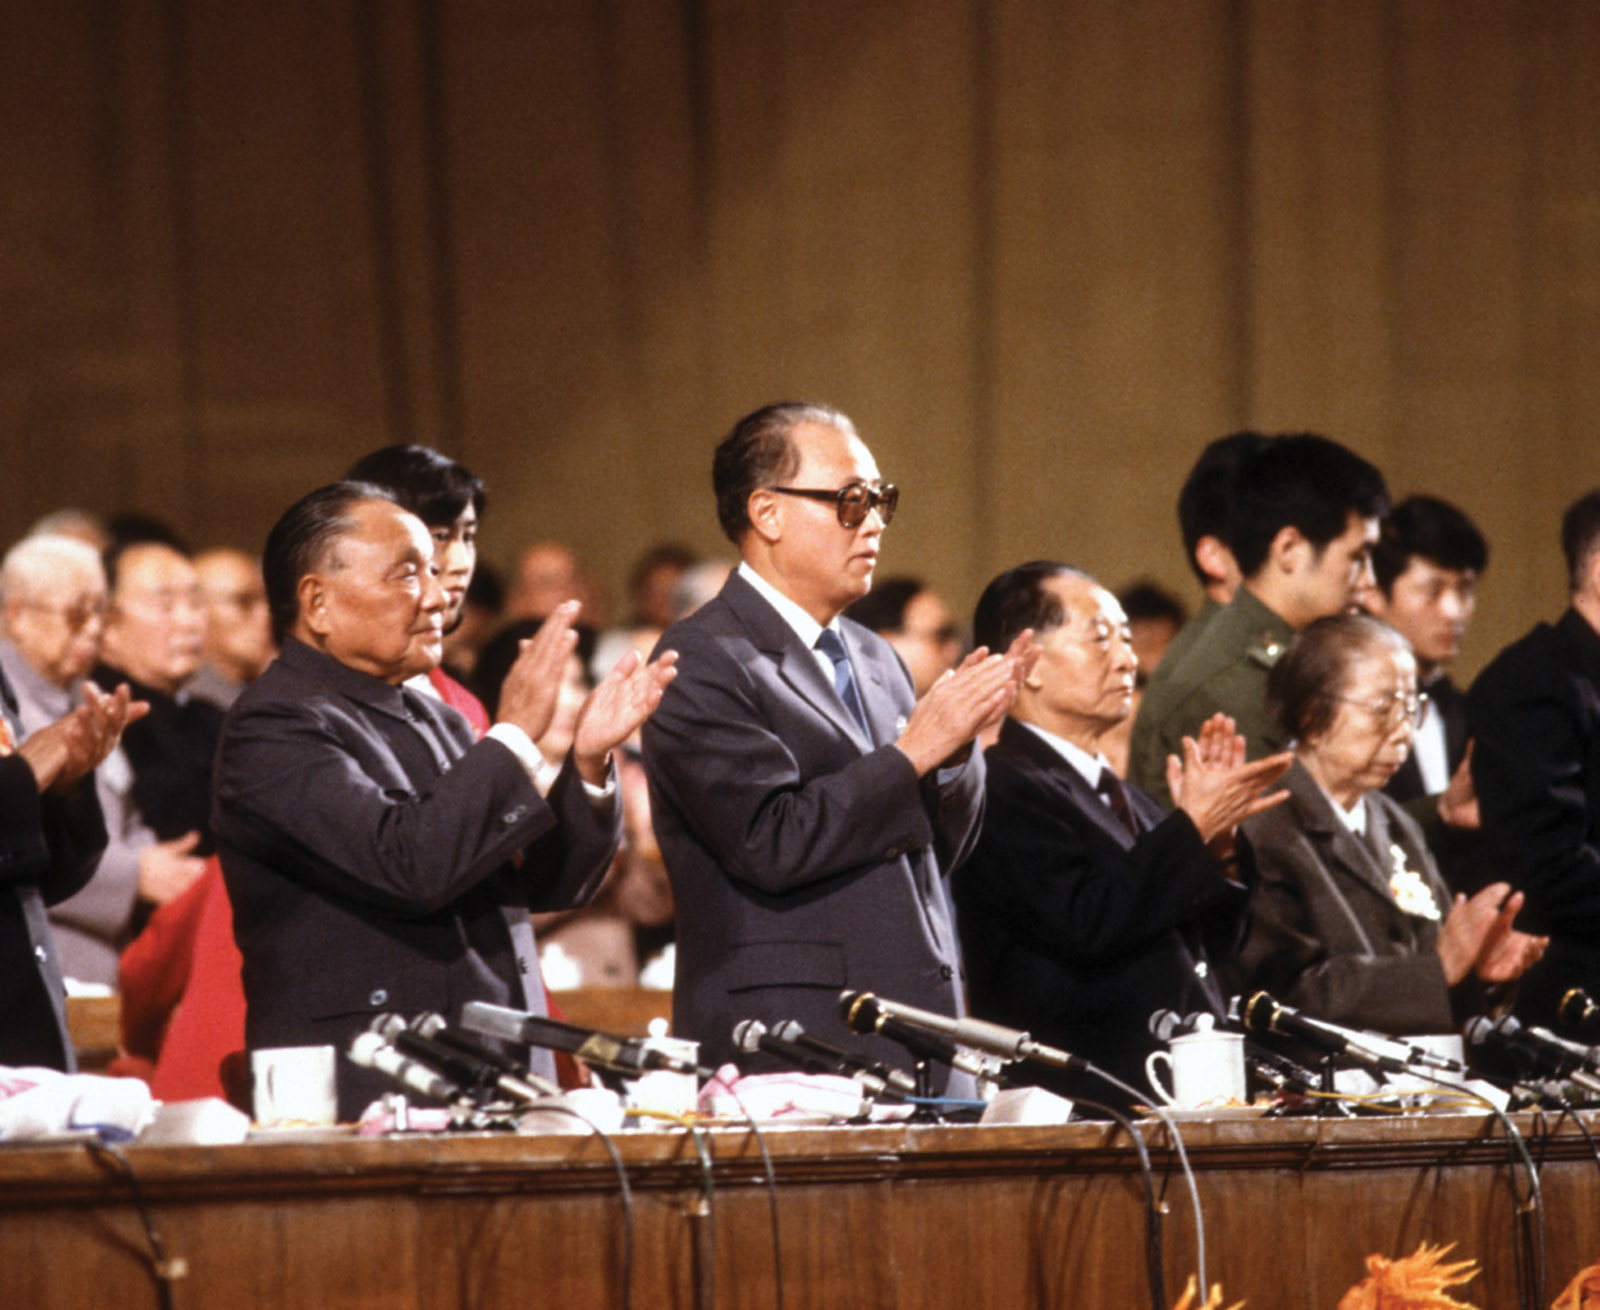 Deng Xiaoping, Zhao Ziyang, and Hu Yaobang at the Thirteenth Party Congress, Beijing